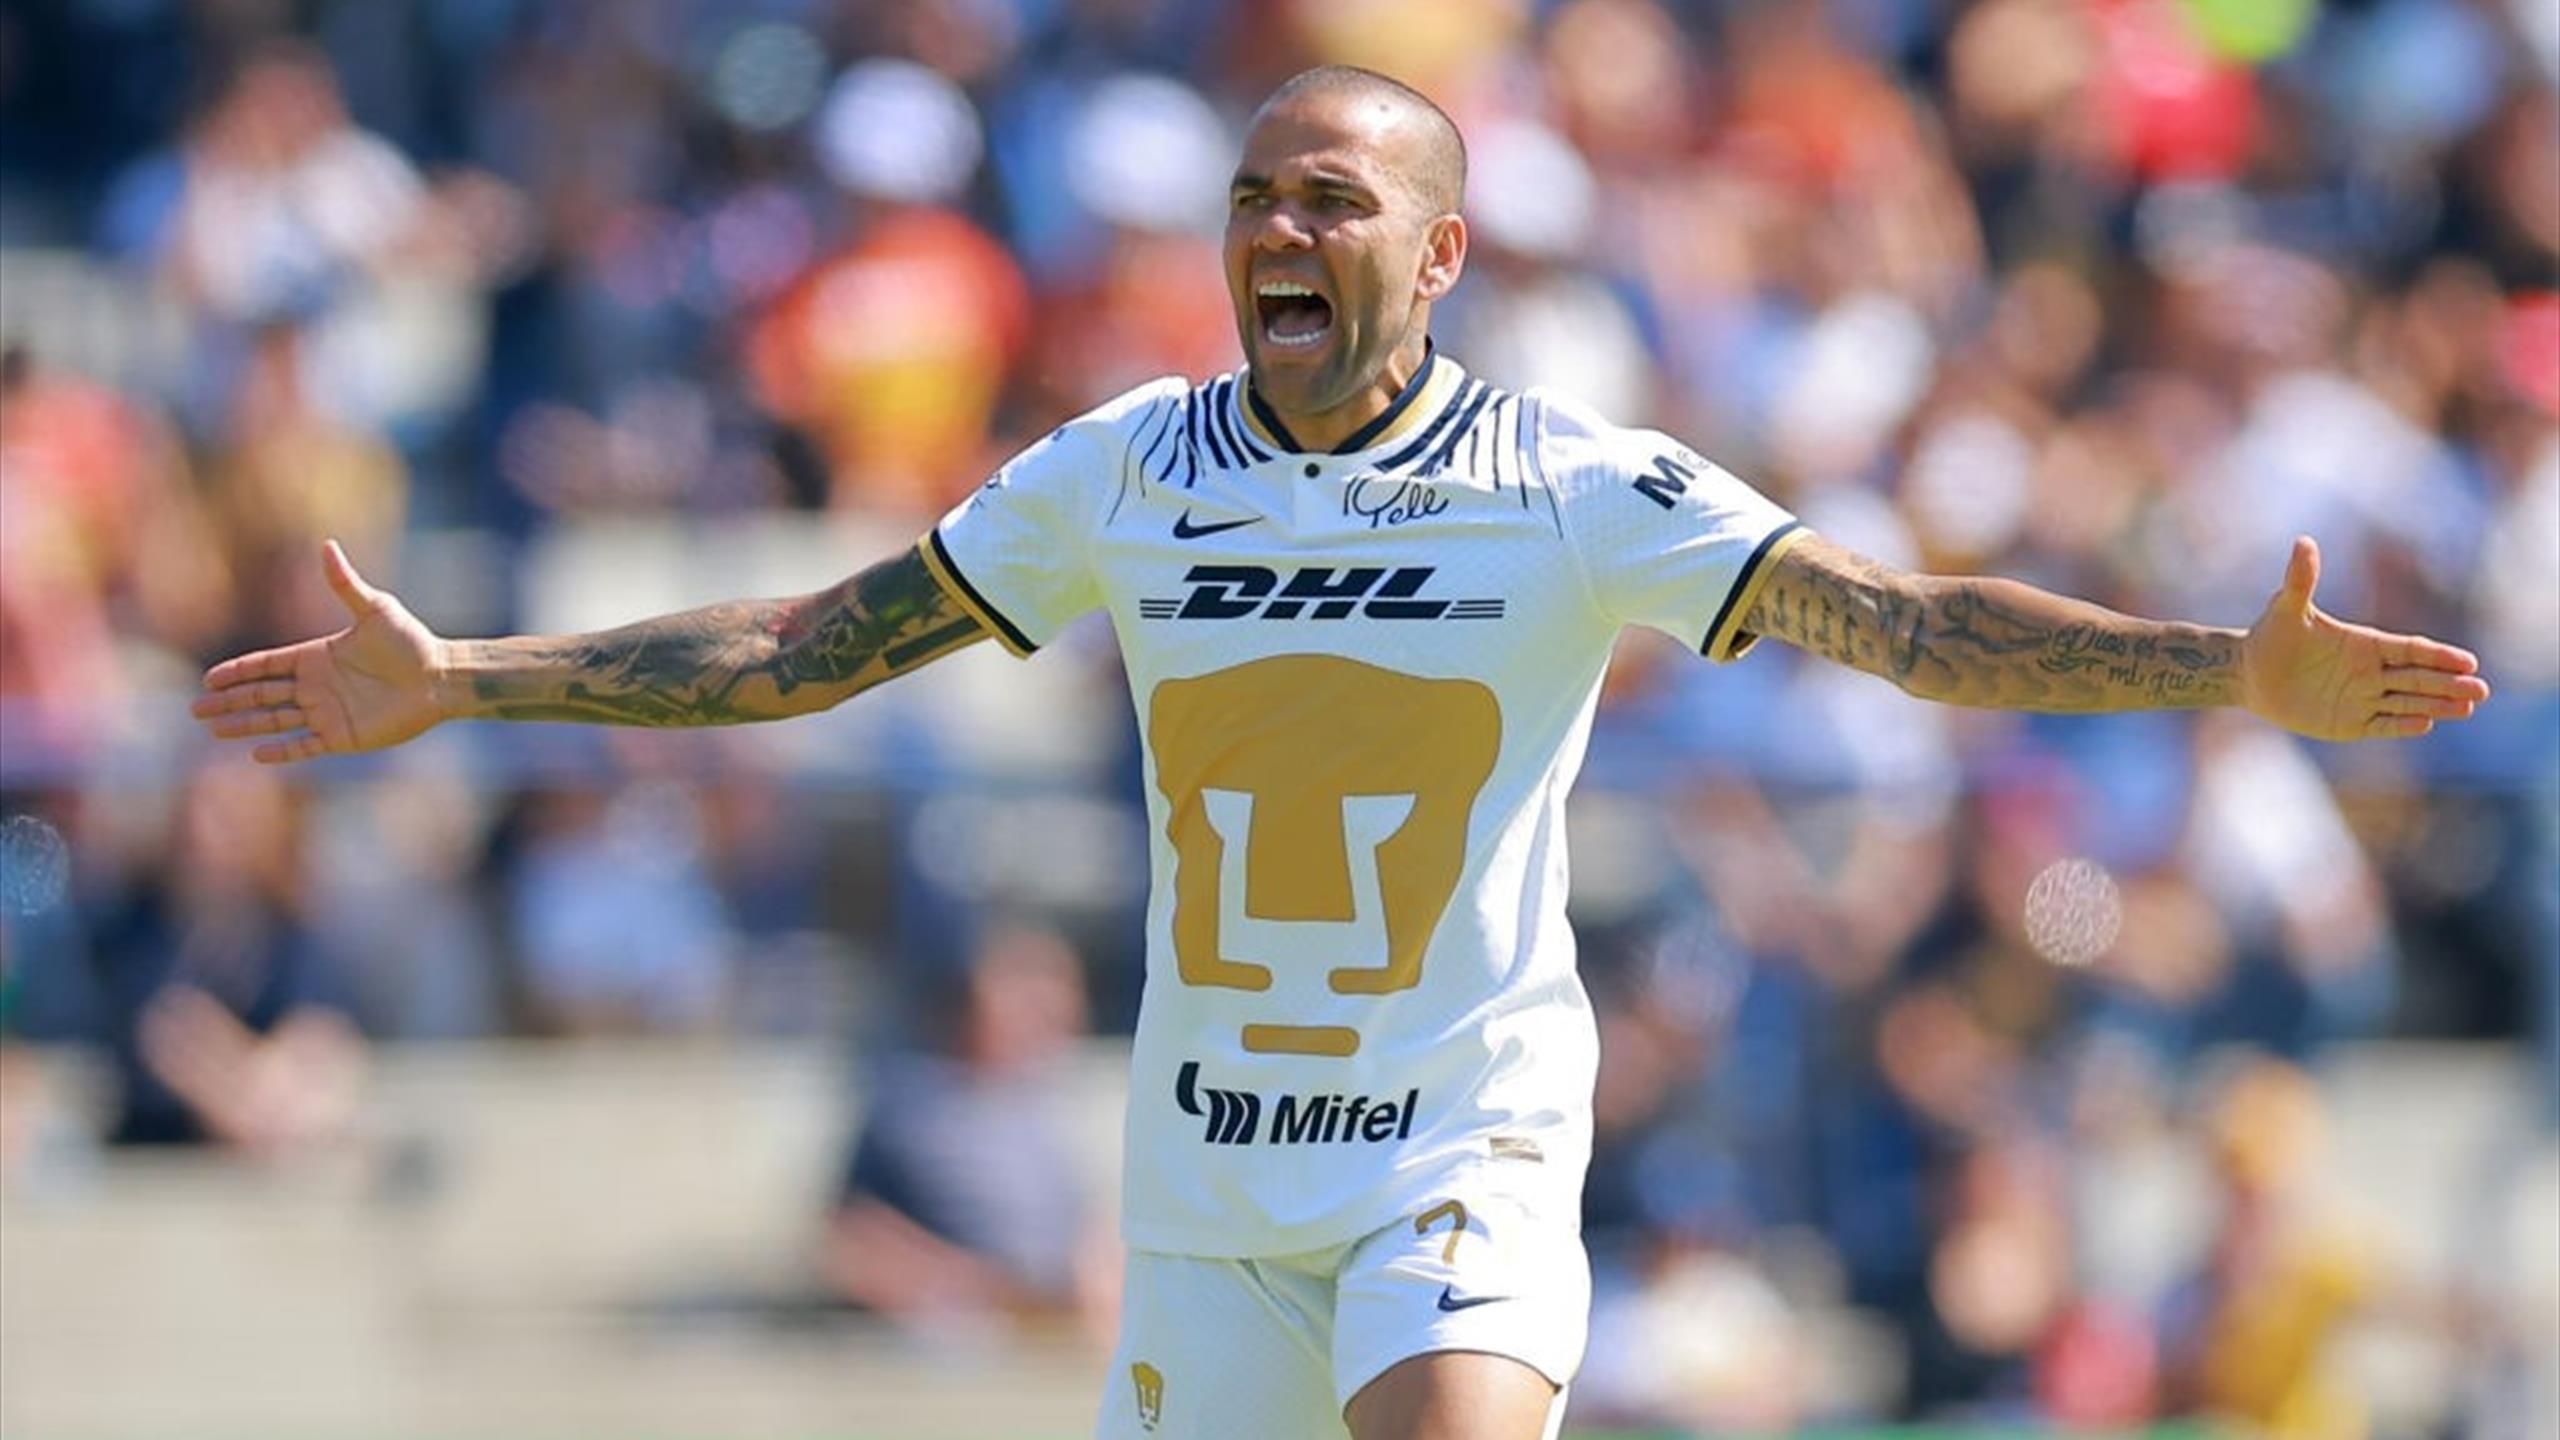 Fútbol | El Pumas UNAM despide a Dani Alves tras su presunta agresión sexual - Eurosport